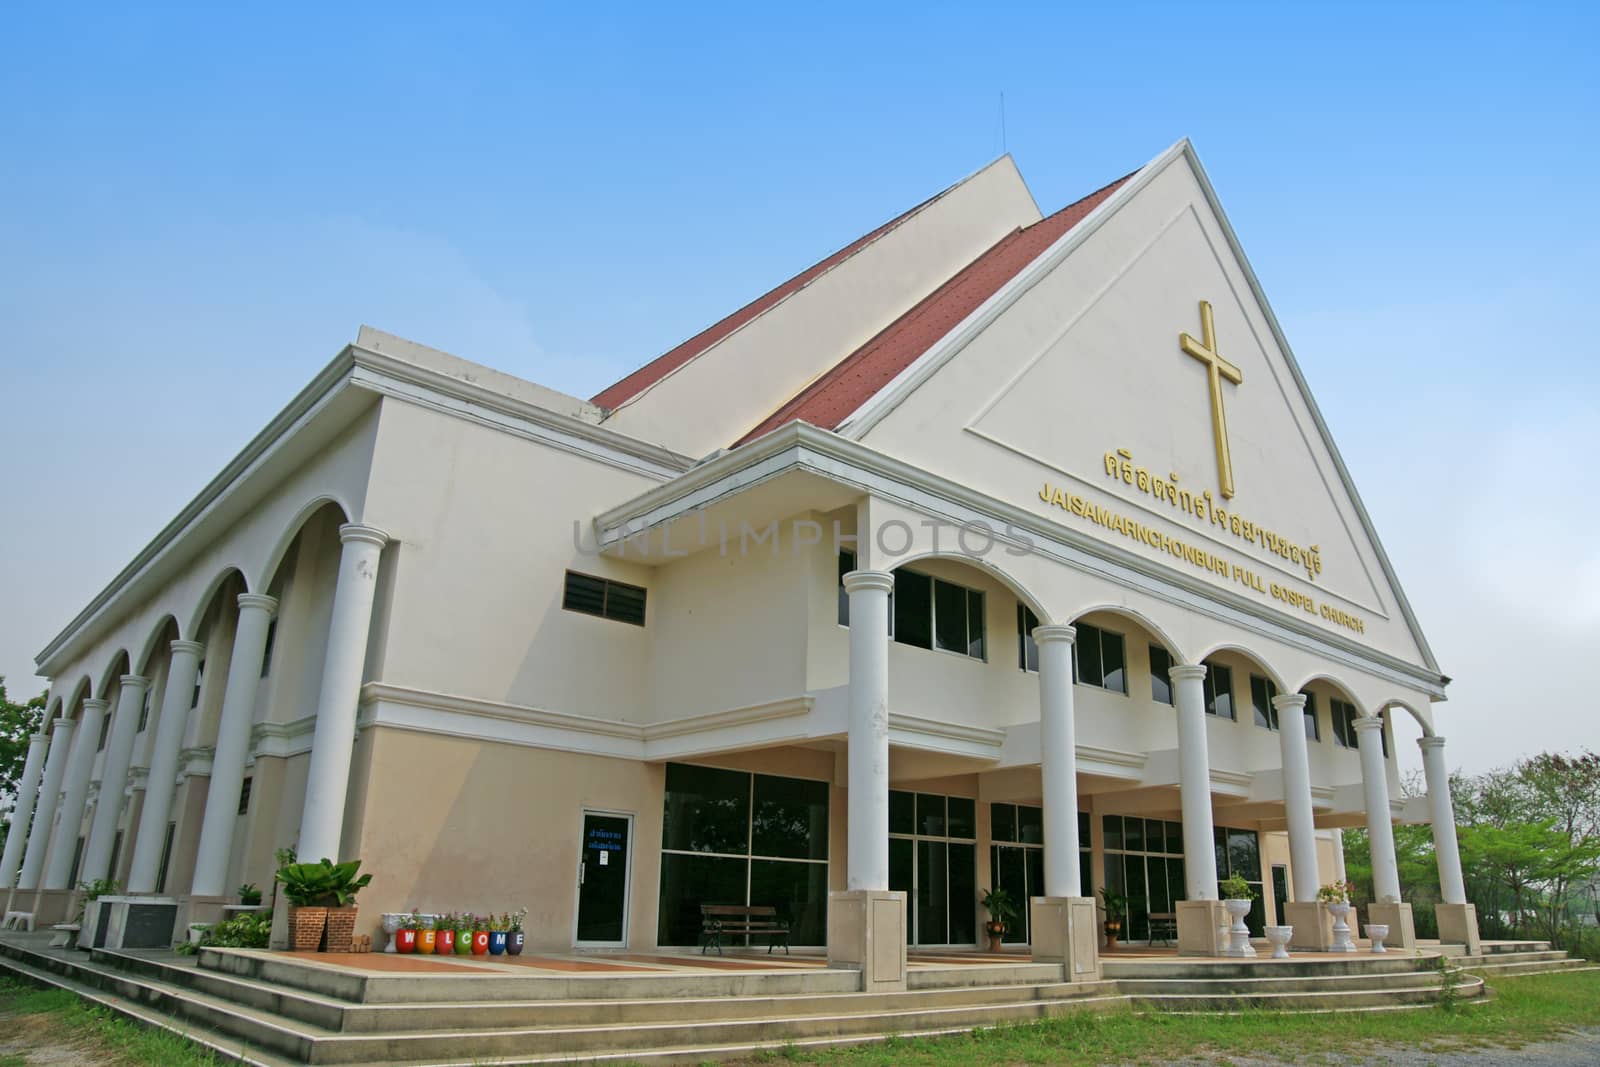 Christian Church, Chonburi -  Thailand (Public Place)